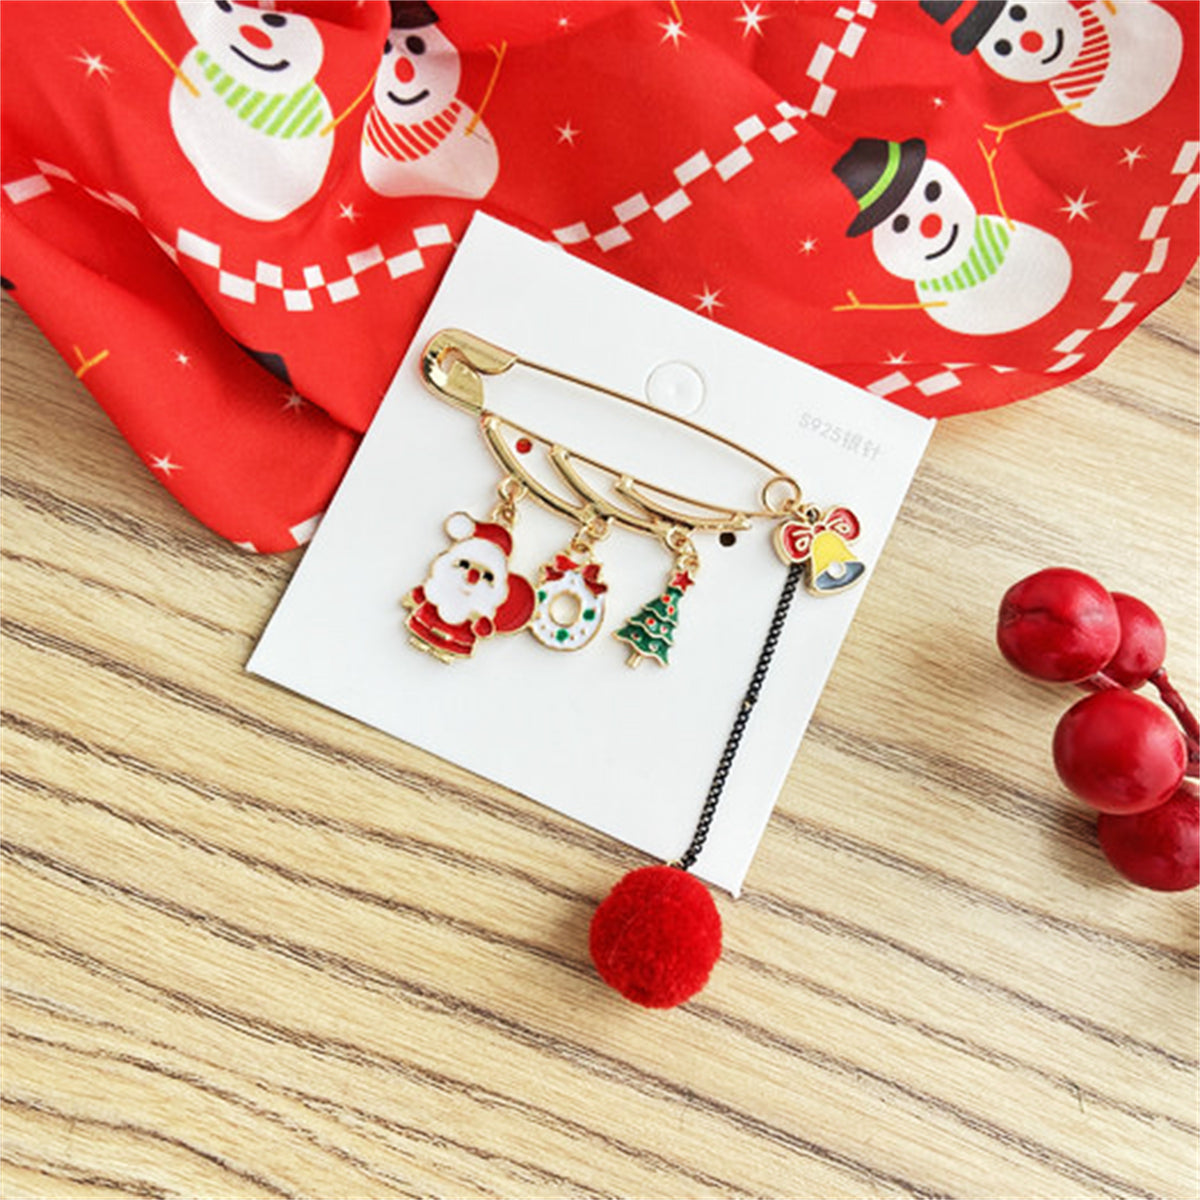 18K Gold-Plated Santa & Christmas Tree Pin Brooch